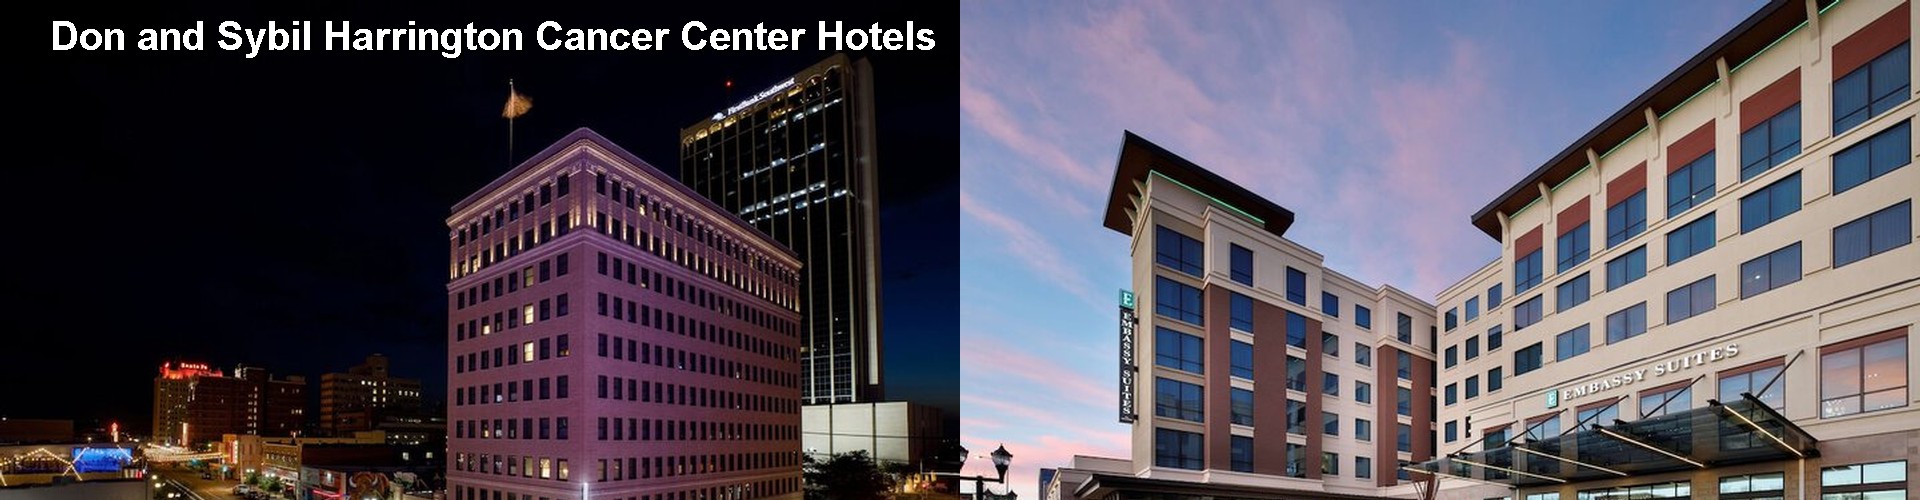 1 Best Hotels near Don and Sybil Harrington Cancer Center